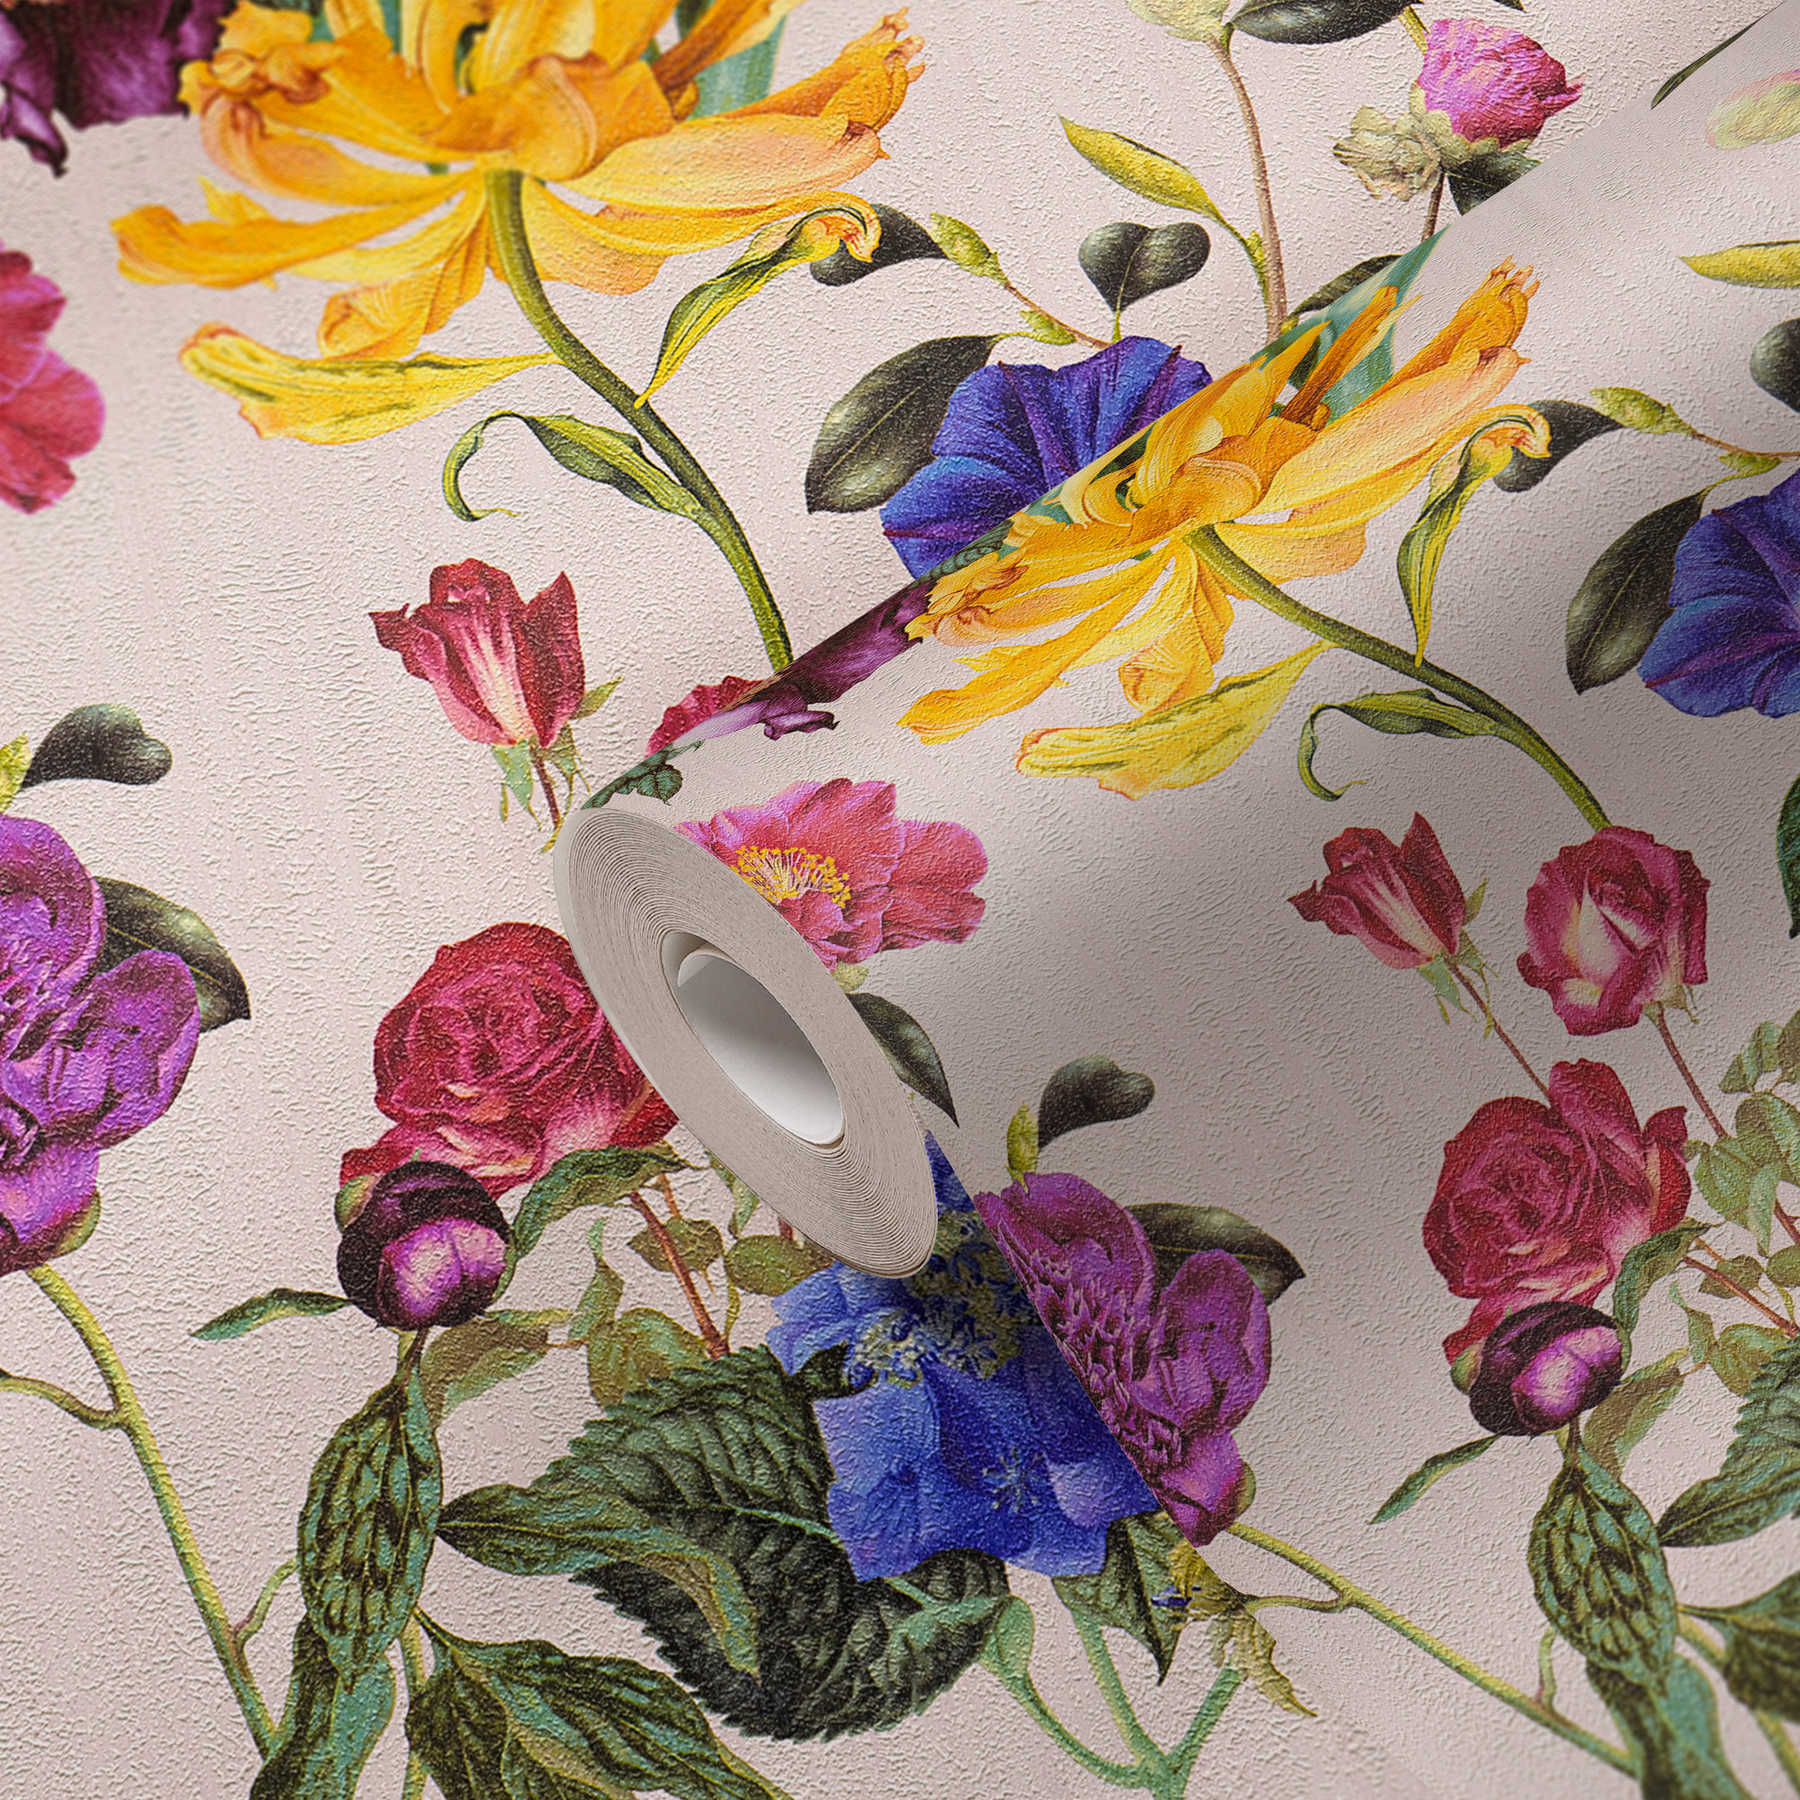             Papier peint fleuri avec des fleurs aux couleurs vives - multicolore, vert, rose
        